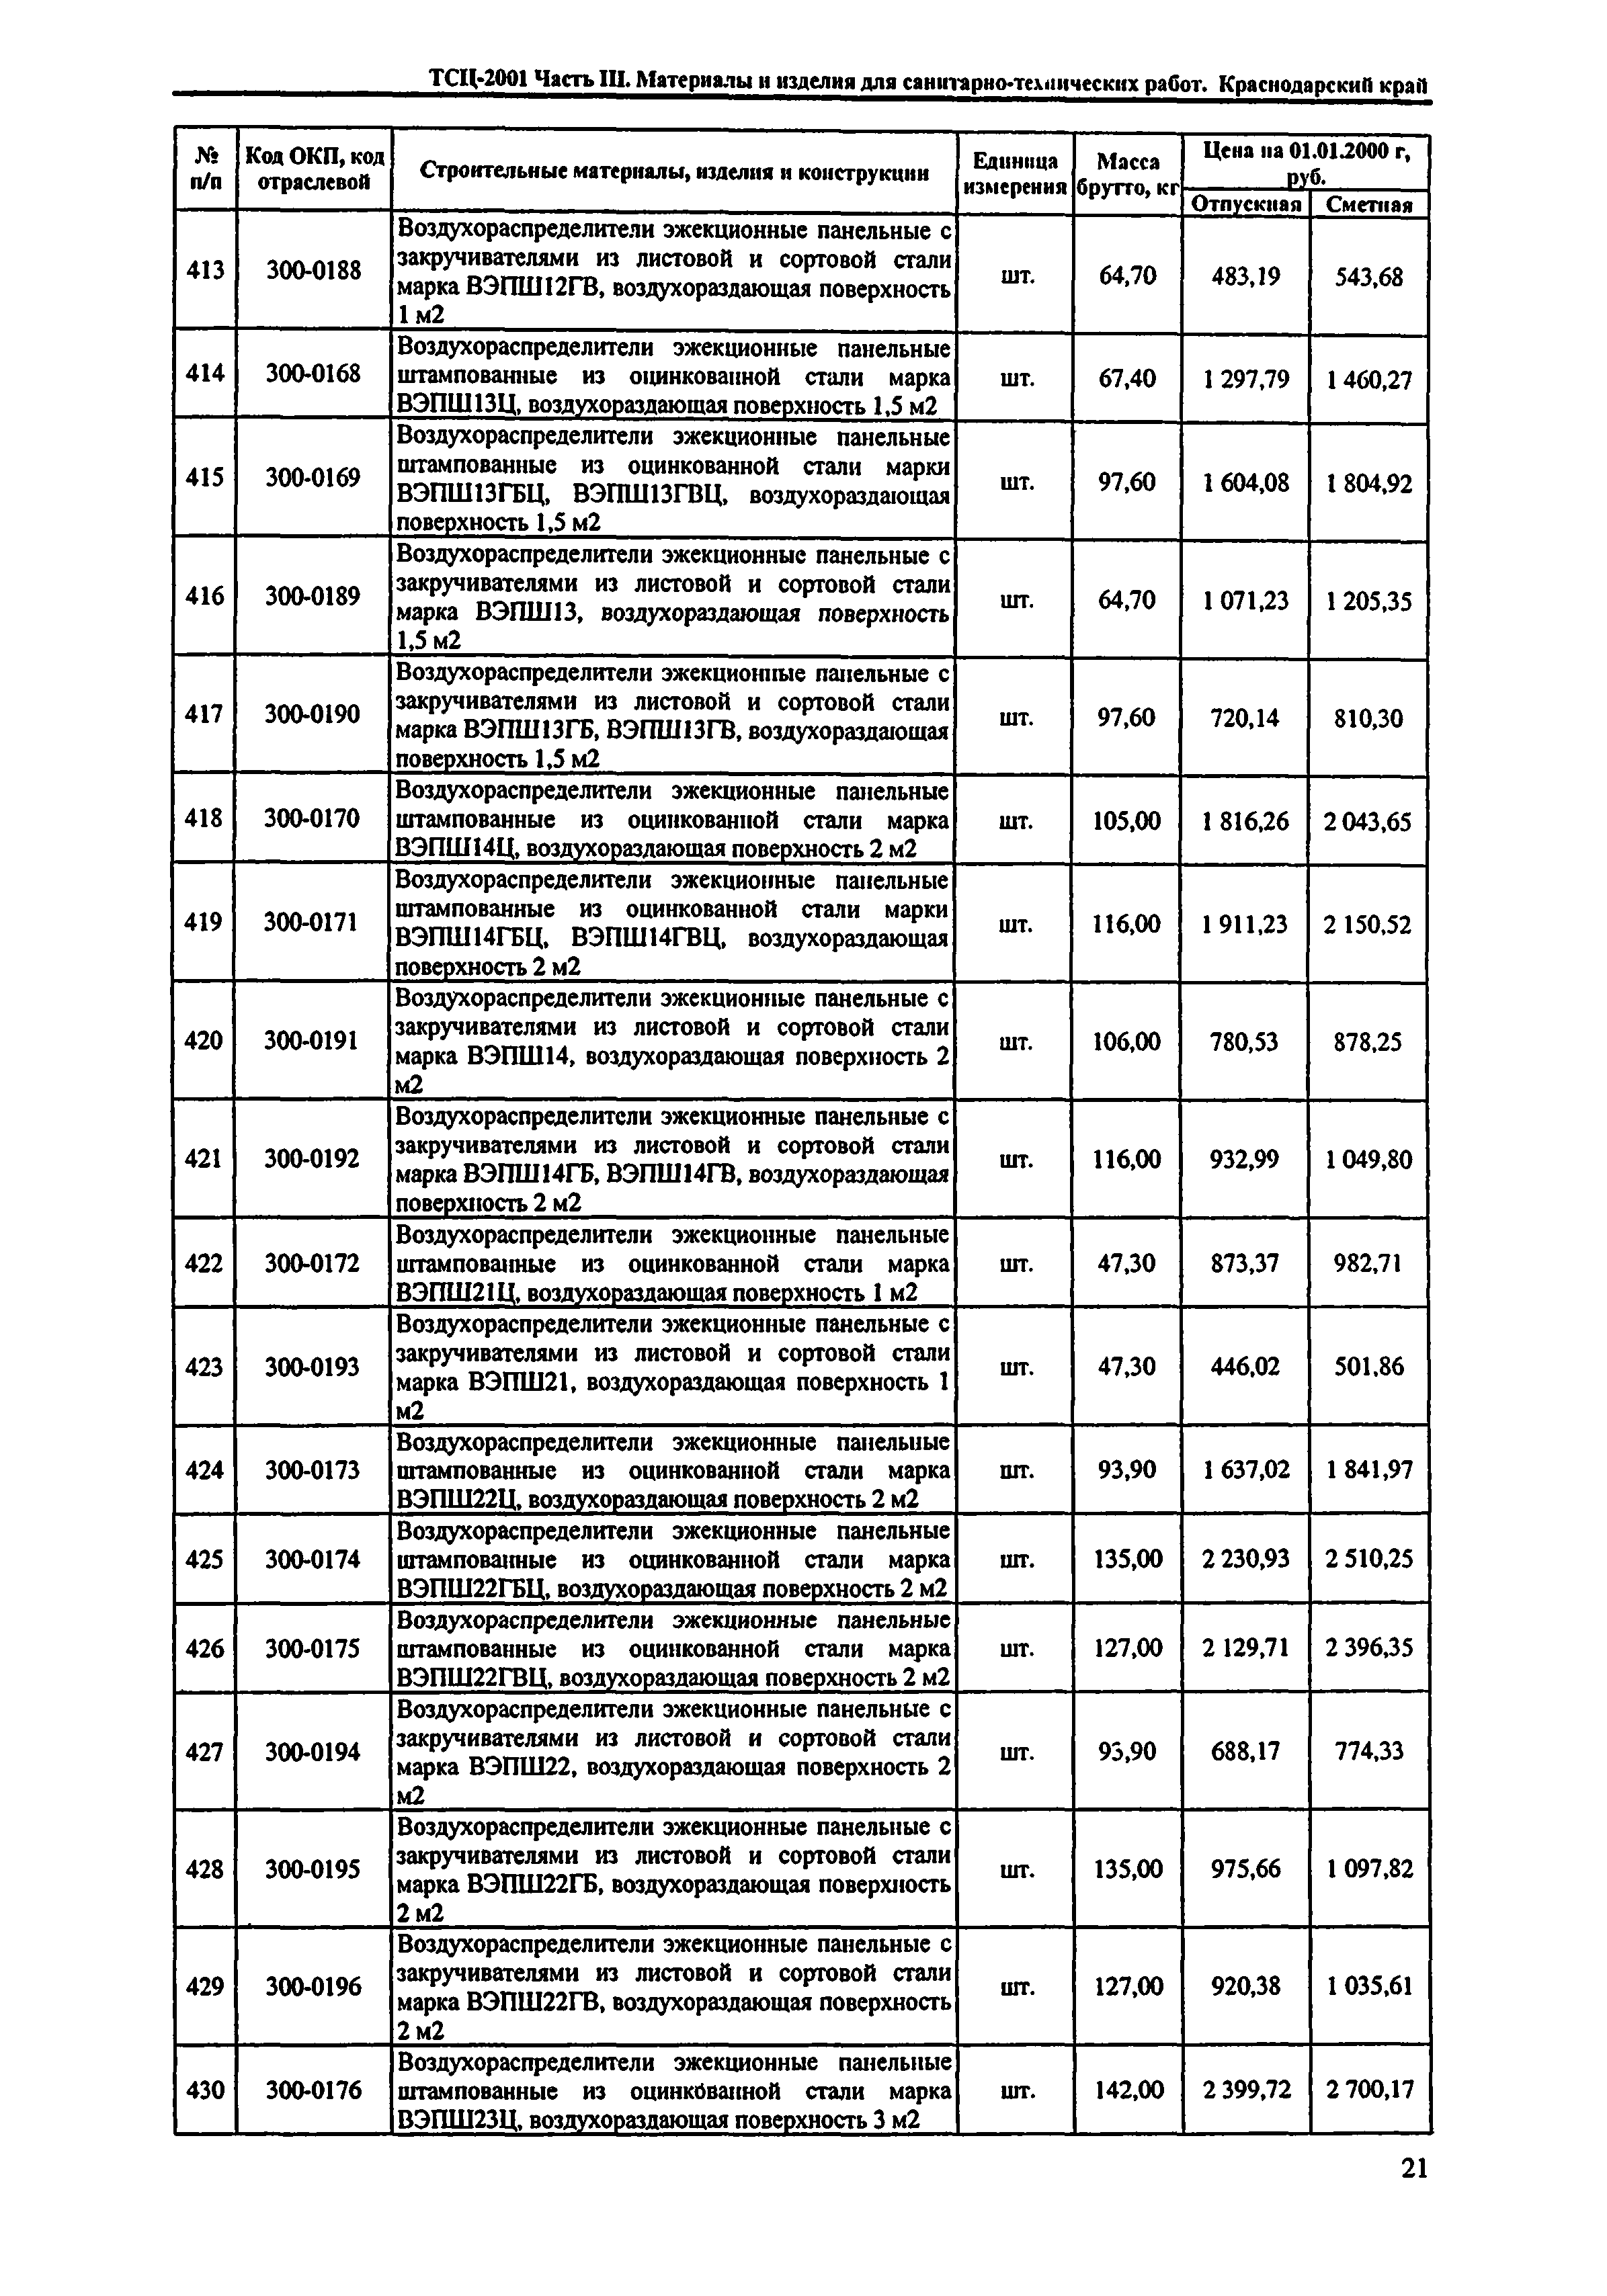 ТСЦ Краснодарский край 81-01-2001